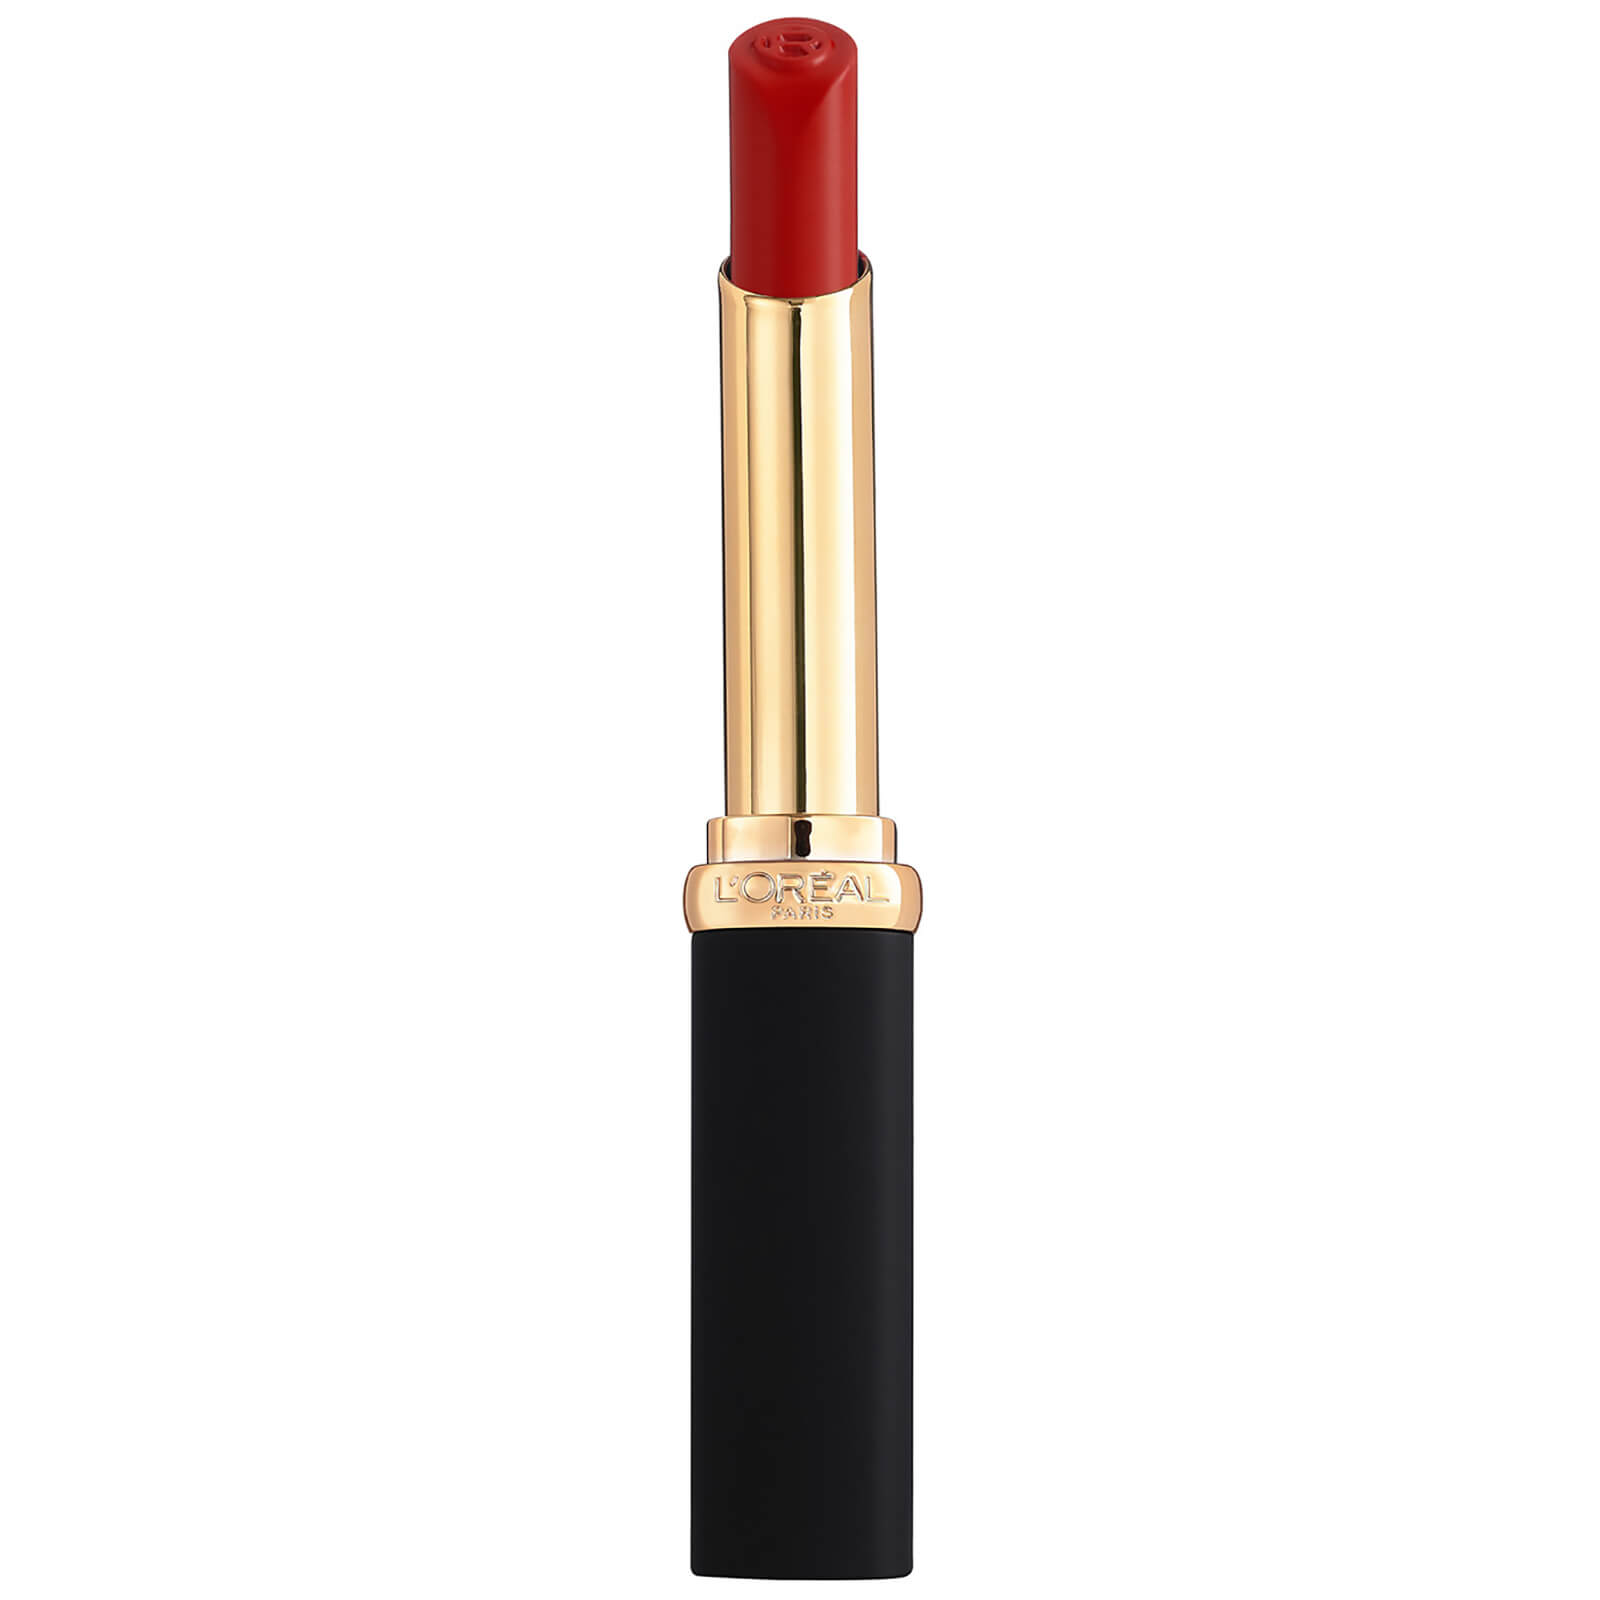 L'Oreal Paris Colour Riche Intense Volume Matte Lipstick 25g (Various Shades) - Rouge Determinance